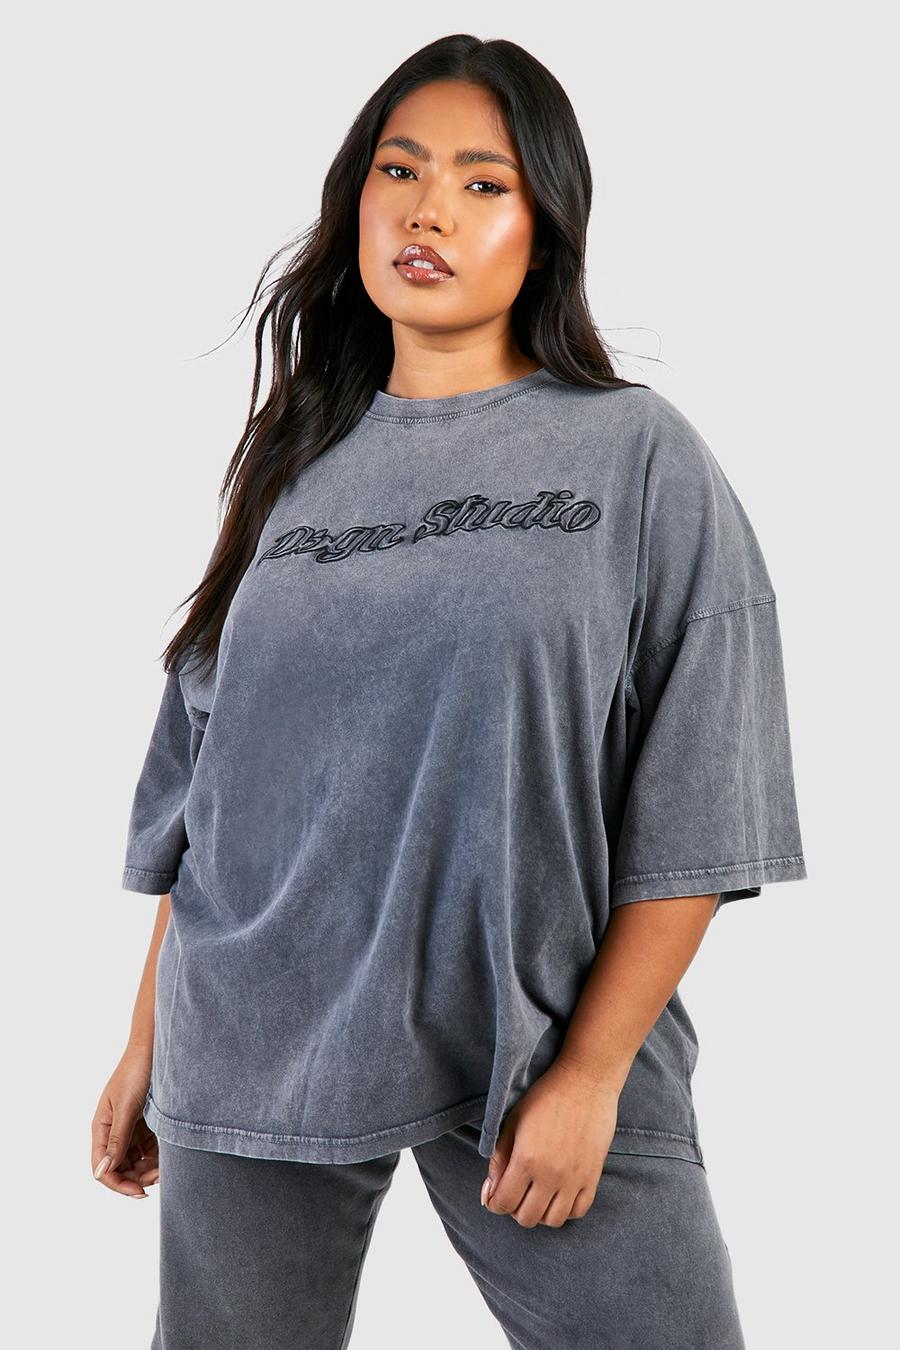 Camiseta Plus oversize con lavado de ácido y bordado Dsgn Studio 3D, Charcoal